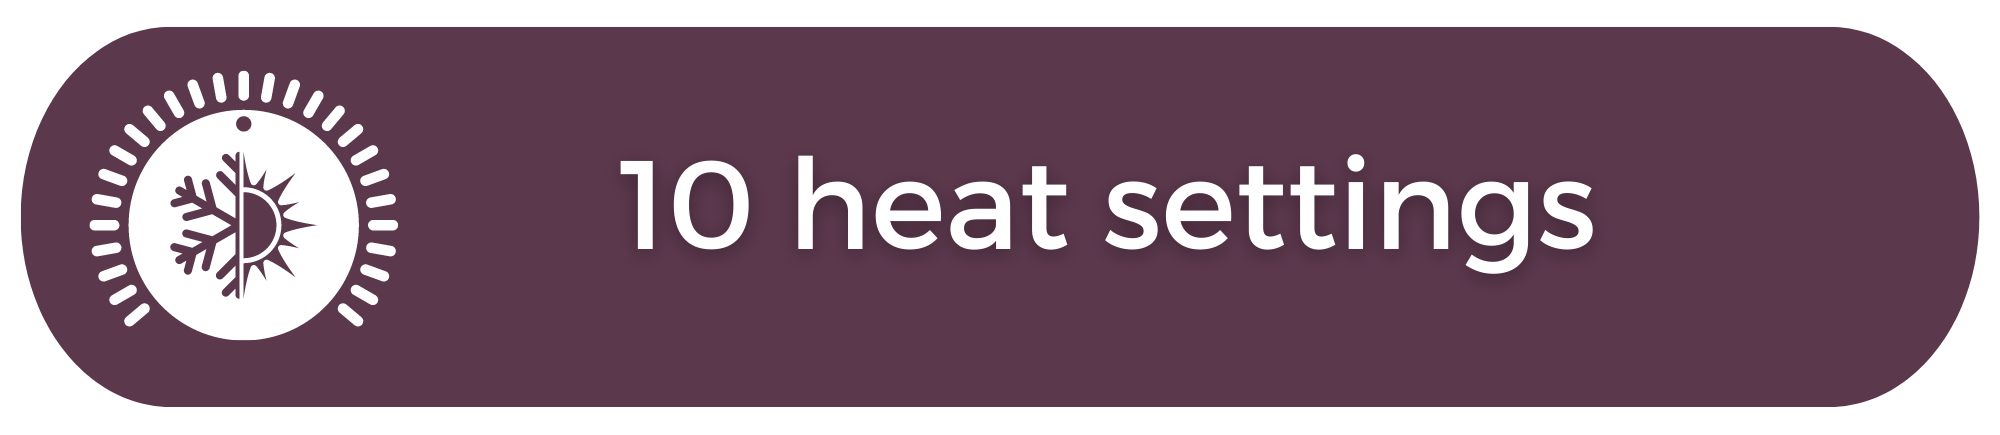 10-heat-settings